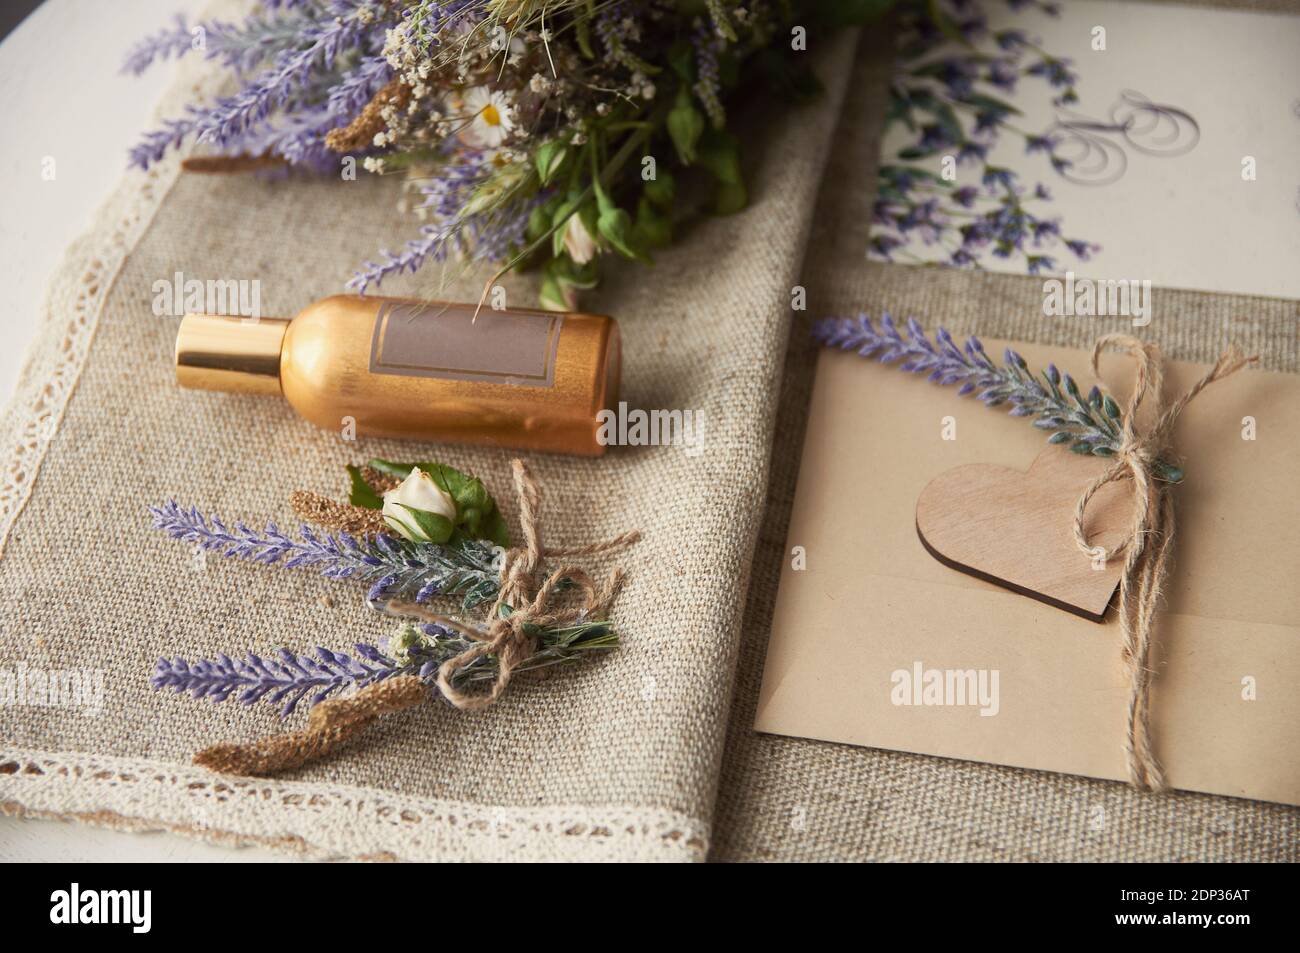 enveloppe de mariage de style boho sur la table avec fleur de lavande Banque D'Images